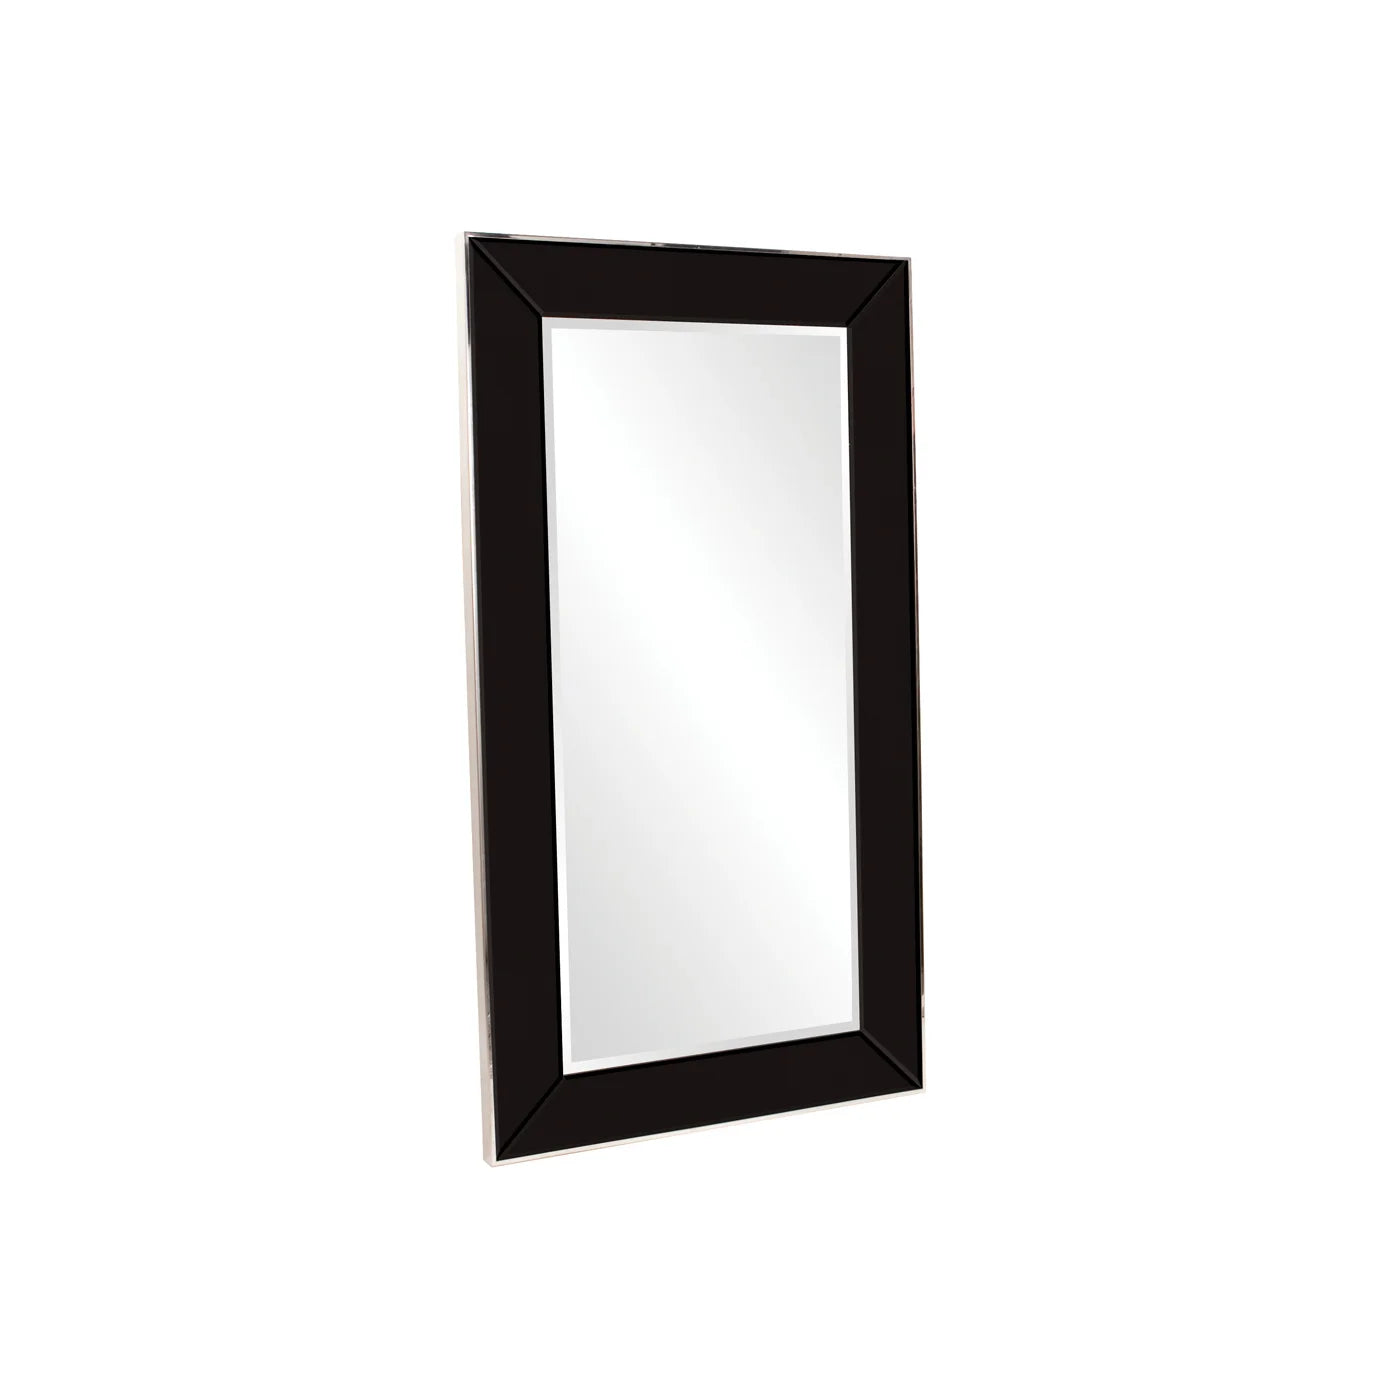 Noved Black Oversize Mirror